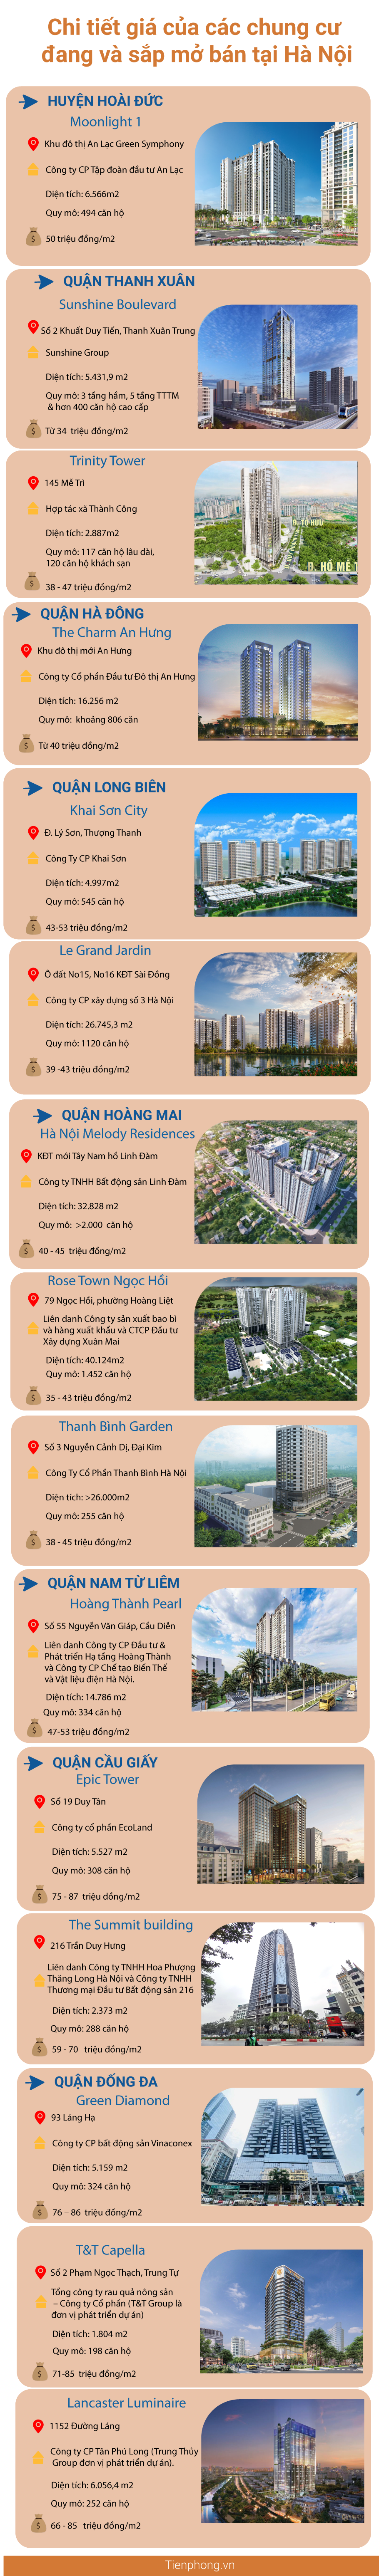 'Choáng' với giá căn hộ đang và sắp mở bán tại Hà Nội, có nơi 100 triệu m2 - Ảnh 1.